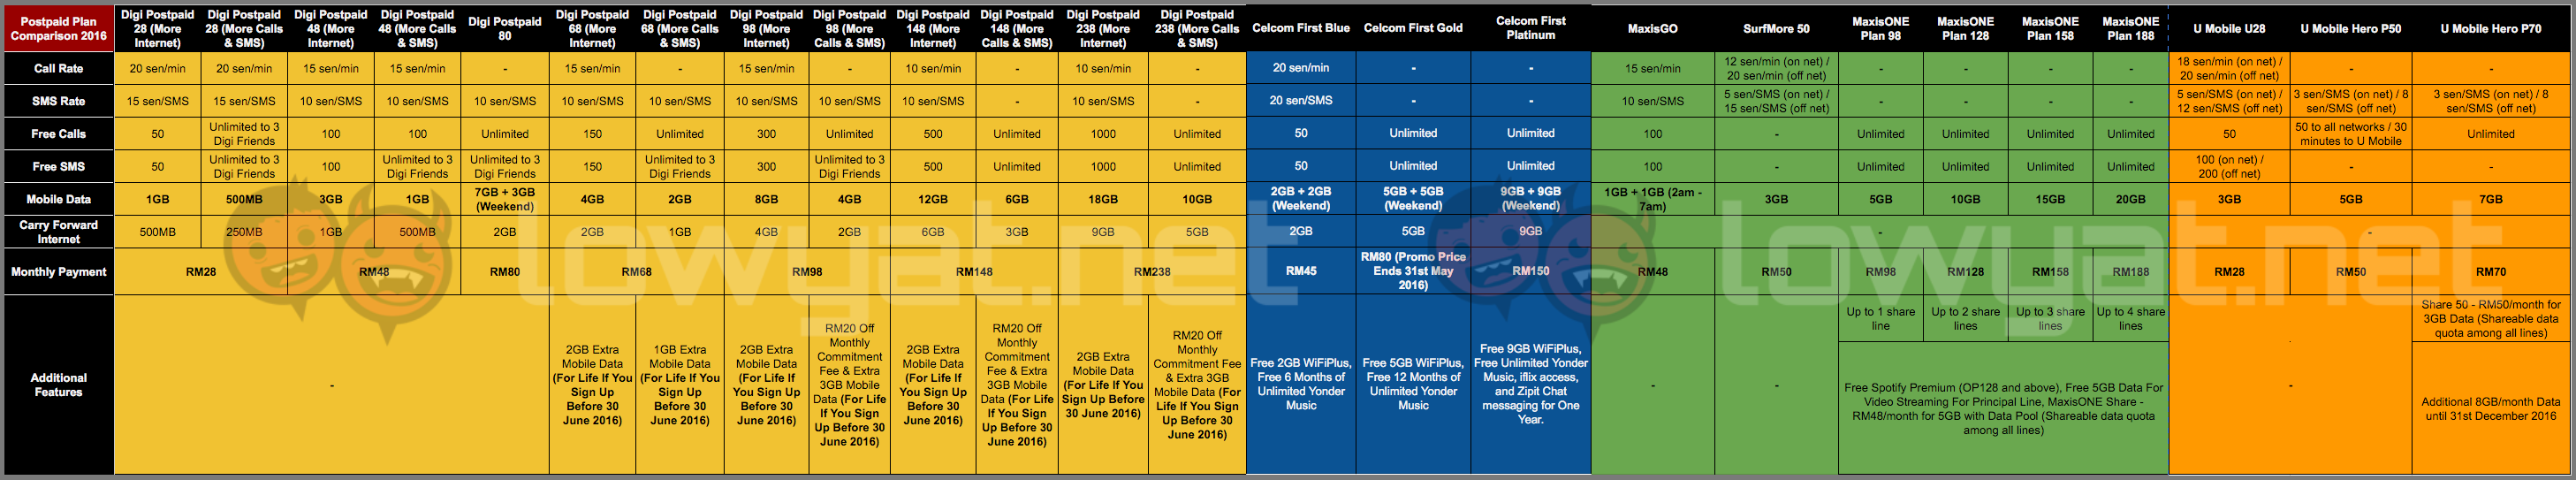 Ultimate-Postpaid-Plan-Comparison-Table-2016 (1)